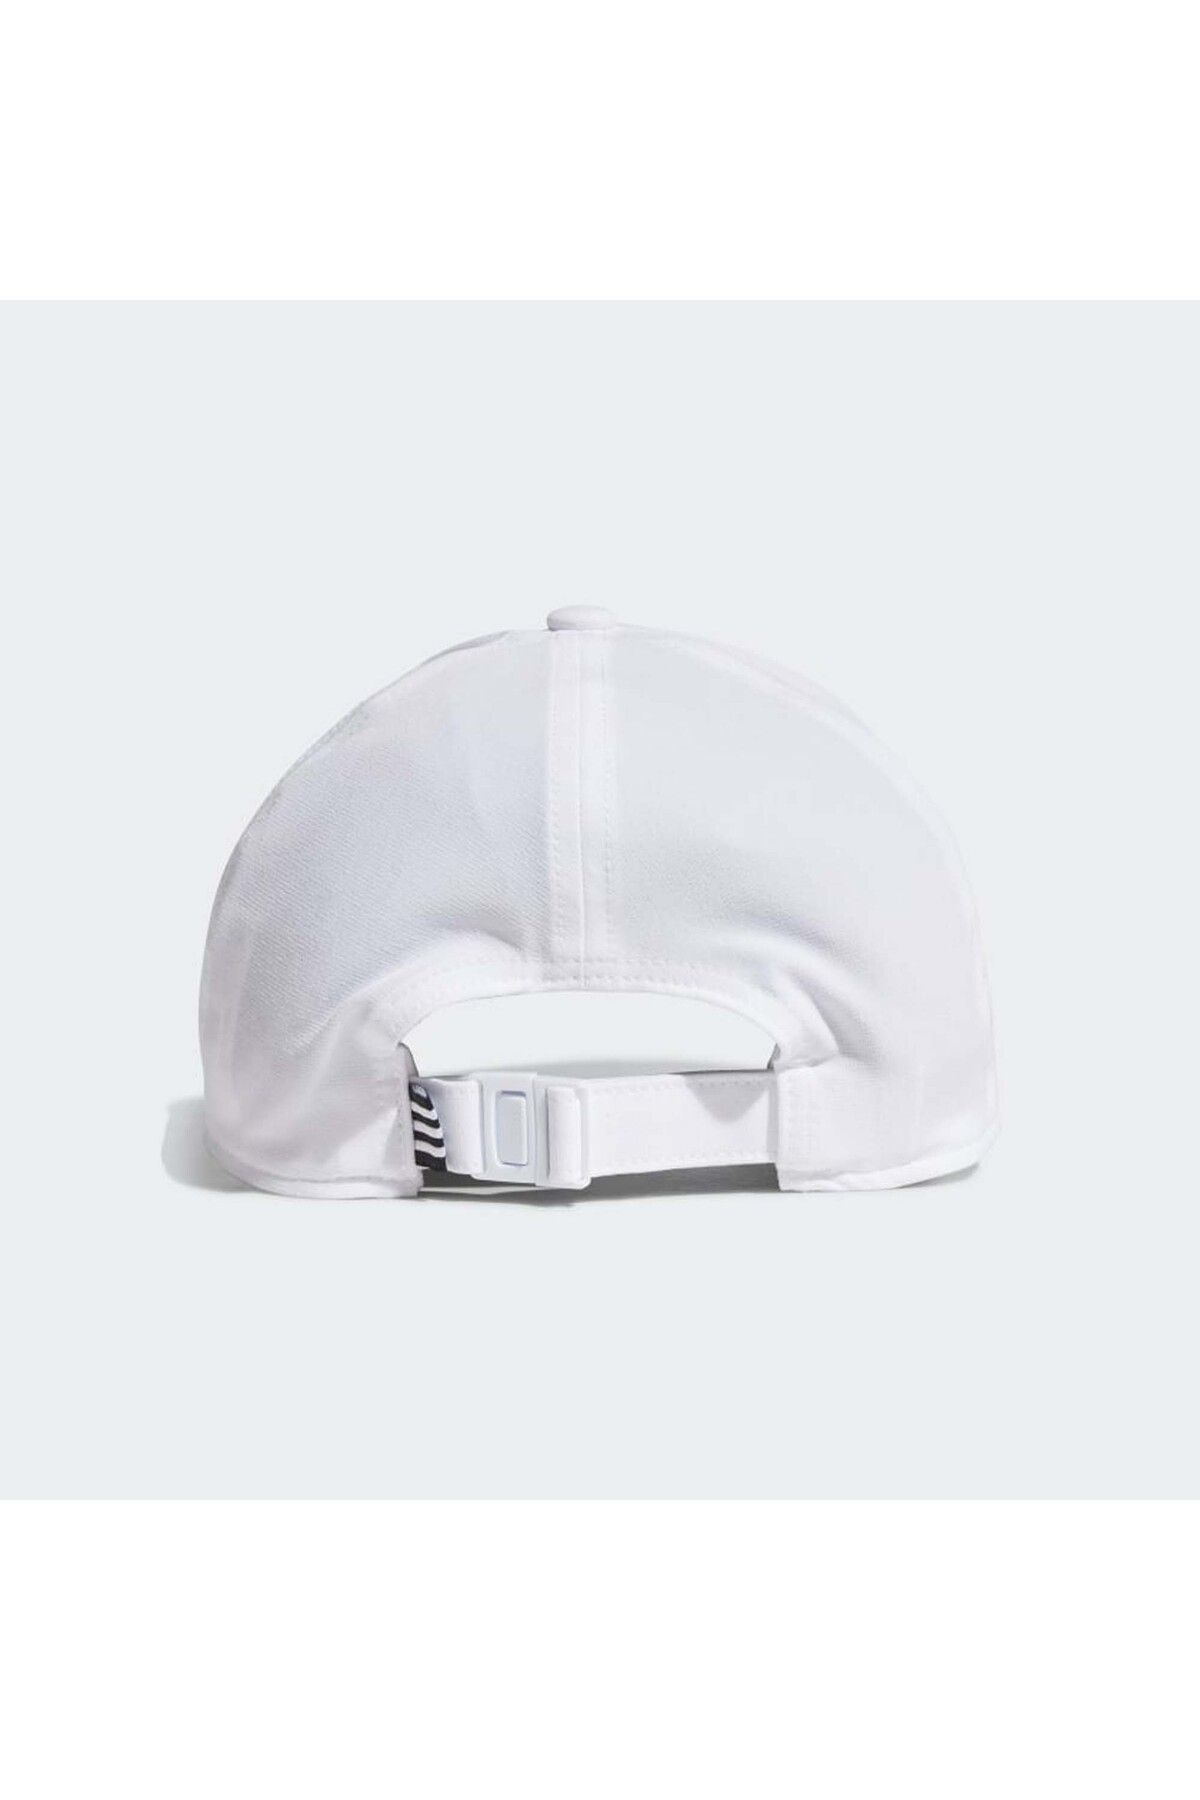 adidas کلاه بیسبال سفید سه راه Aeroready (gm4511)